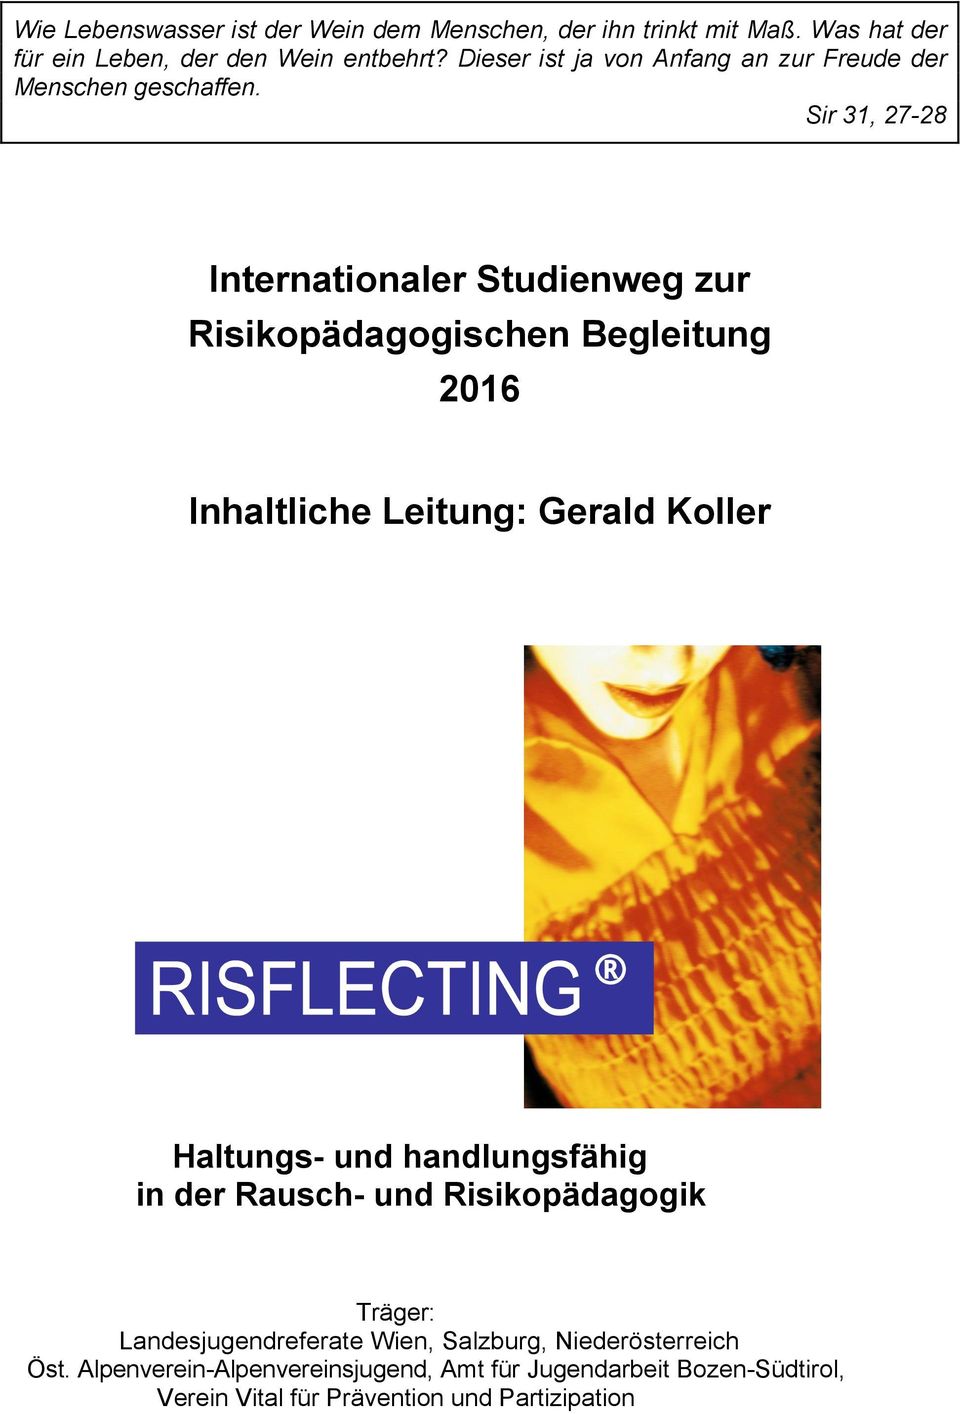 Sir 31, 27-28 Internationaler Studienweg zur Risikopädagogischen Begleitung 2016 Inhaltliche Leitung: Gerald Koller Haltungs- und